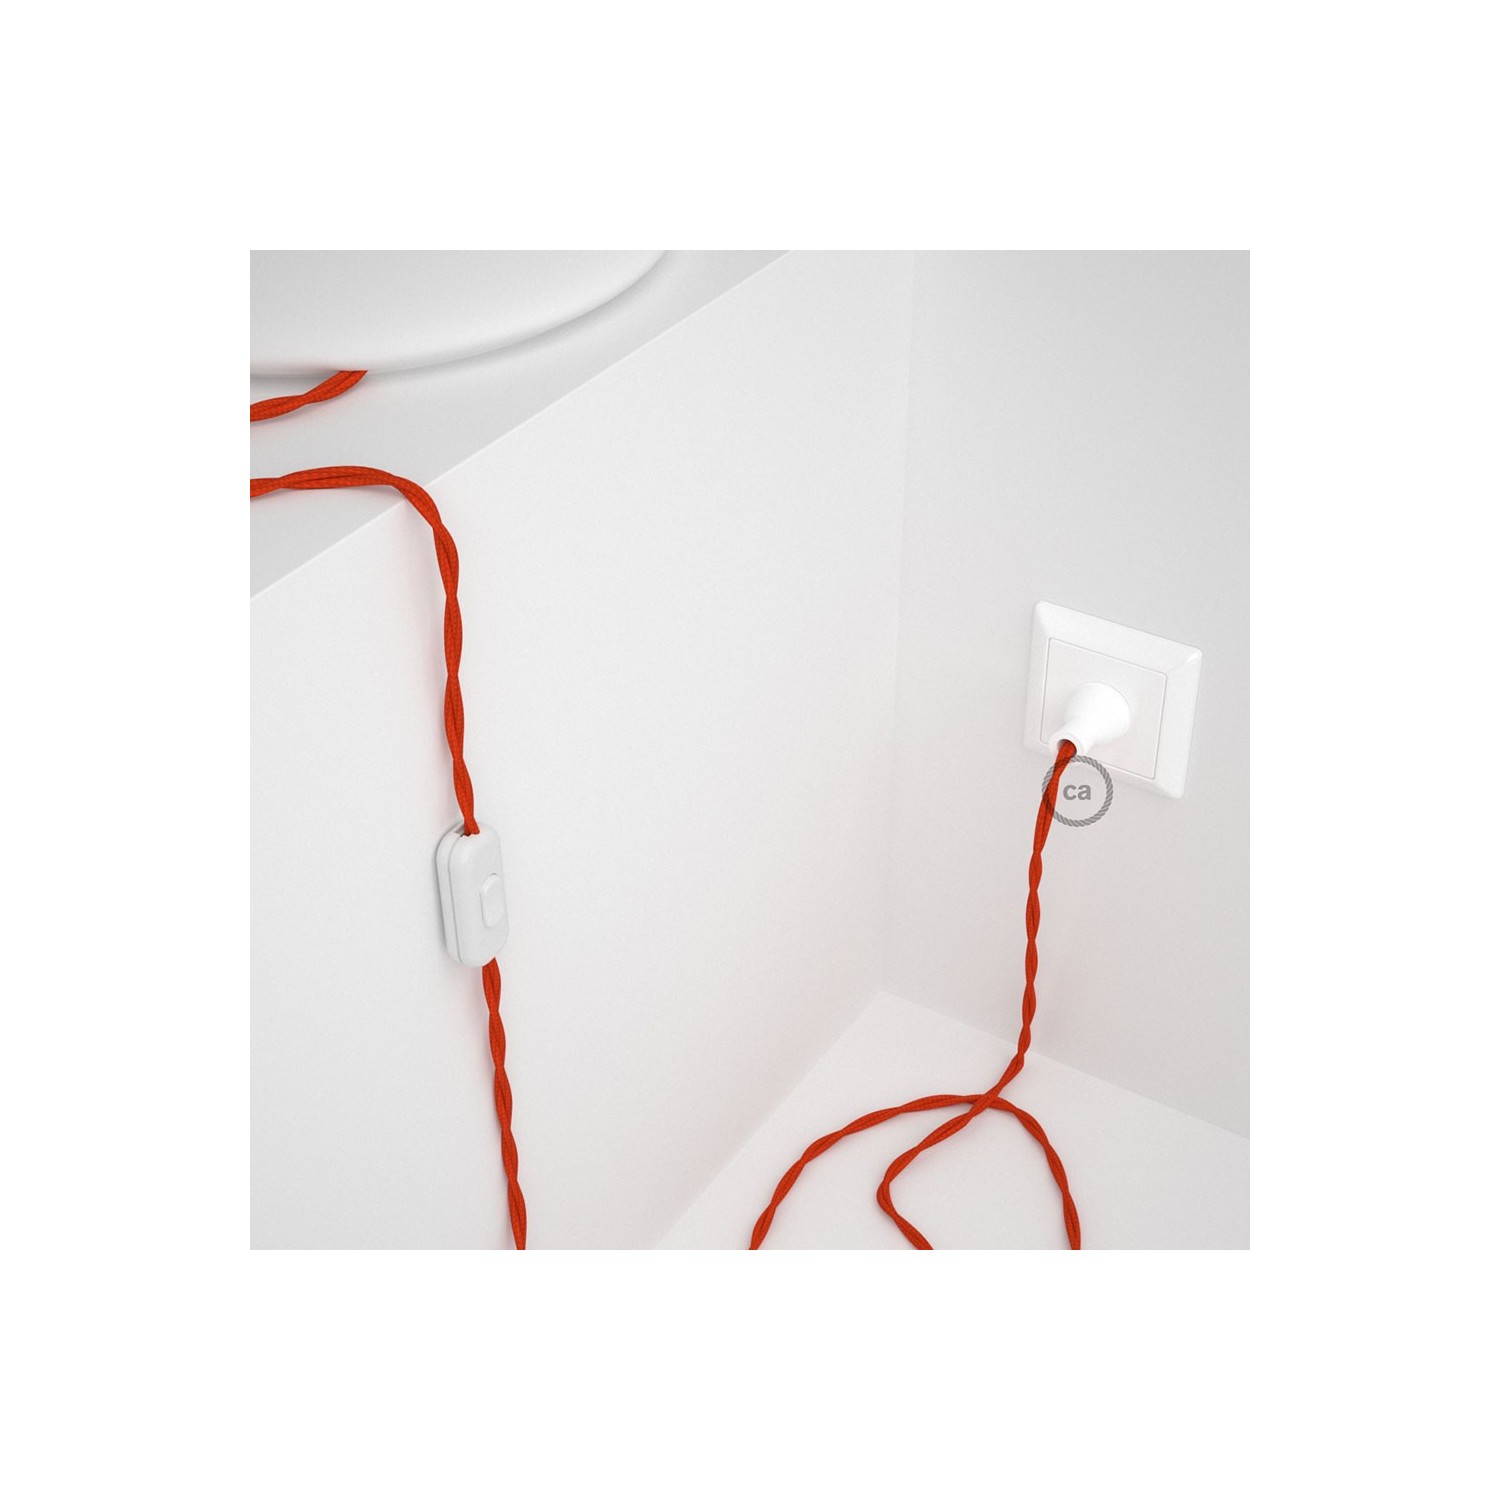 Cableado para lámpara de mesa, cable TM15 Rayón Naranja 1,8 m. Elige el color de la clavija y del interruptor!